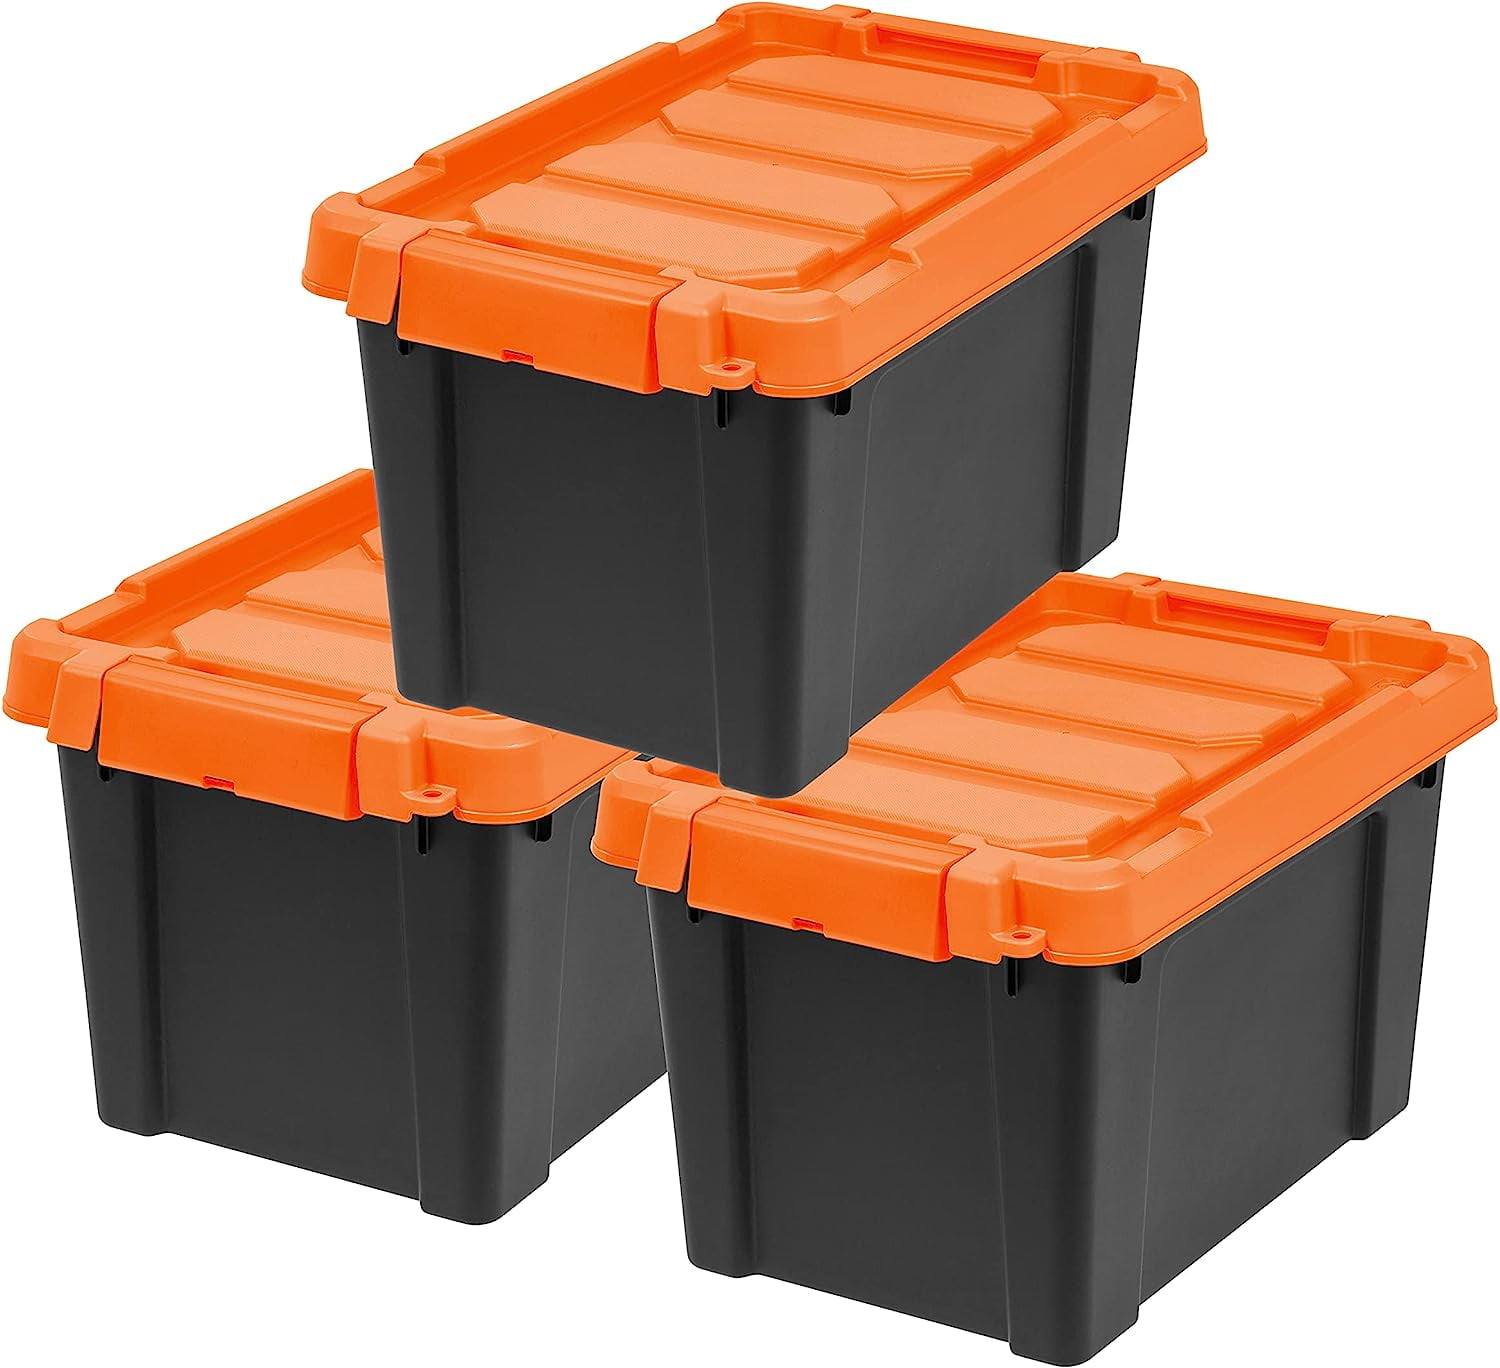 IRIS® Weathertight® Plastic Storage Container, 6.5 Quarts, 6 1/2 x 8 1/2  x 11 1/2, Clear